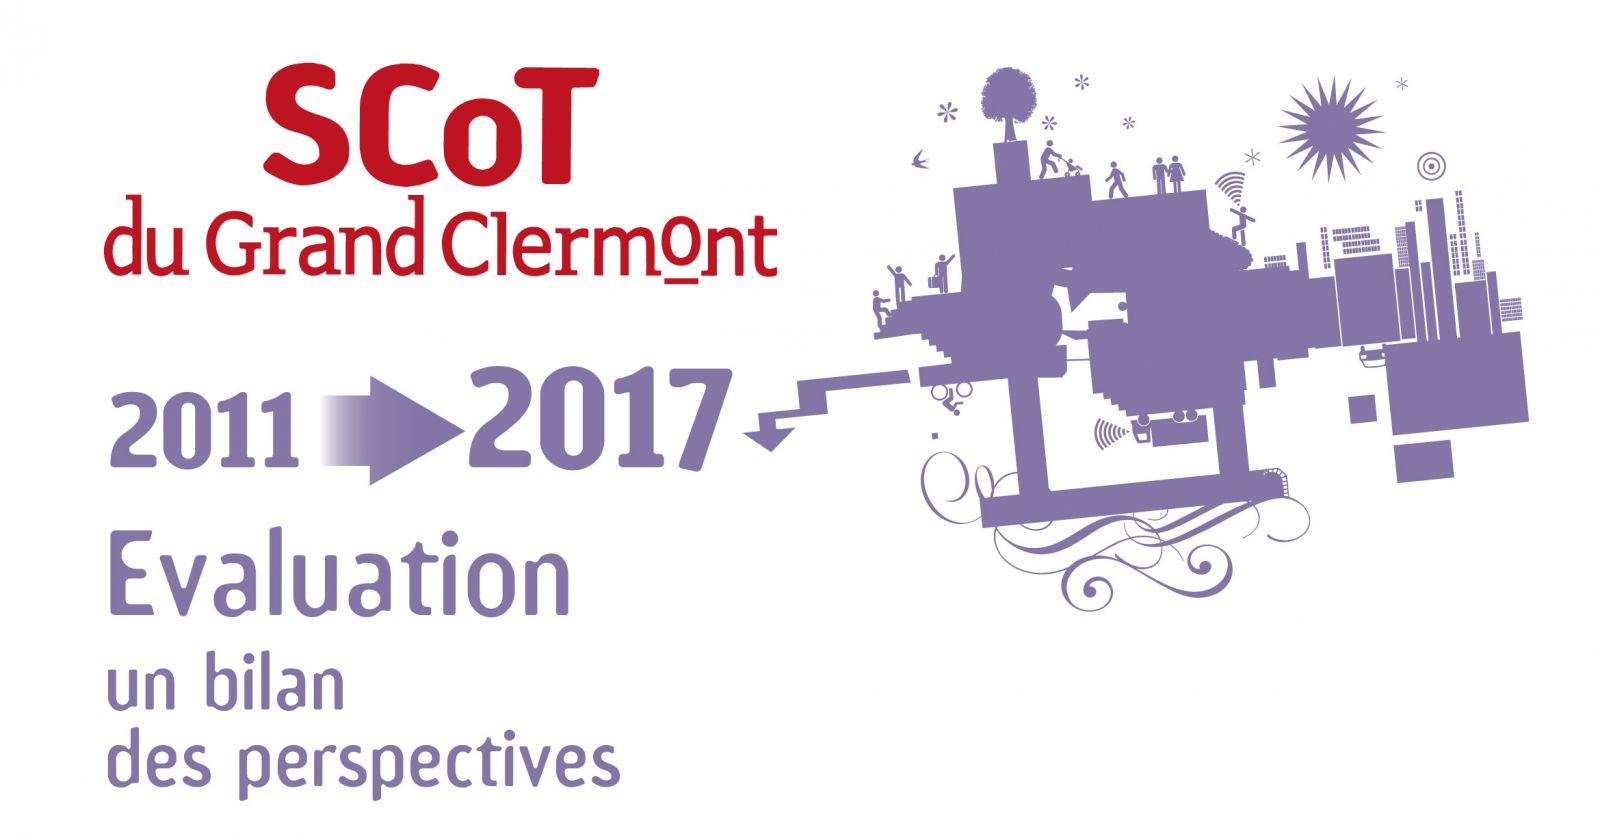 scot du grand clermont évaluation 2011 - 2017 